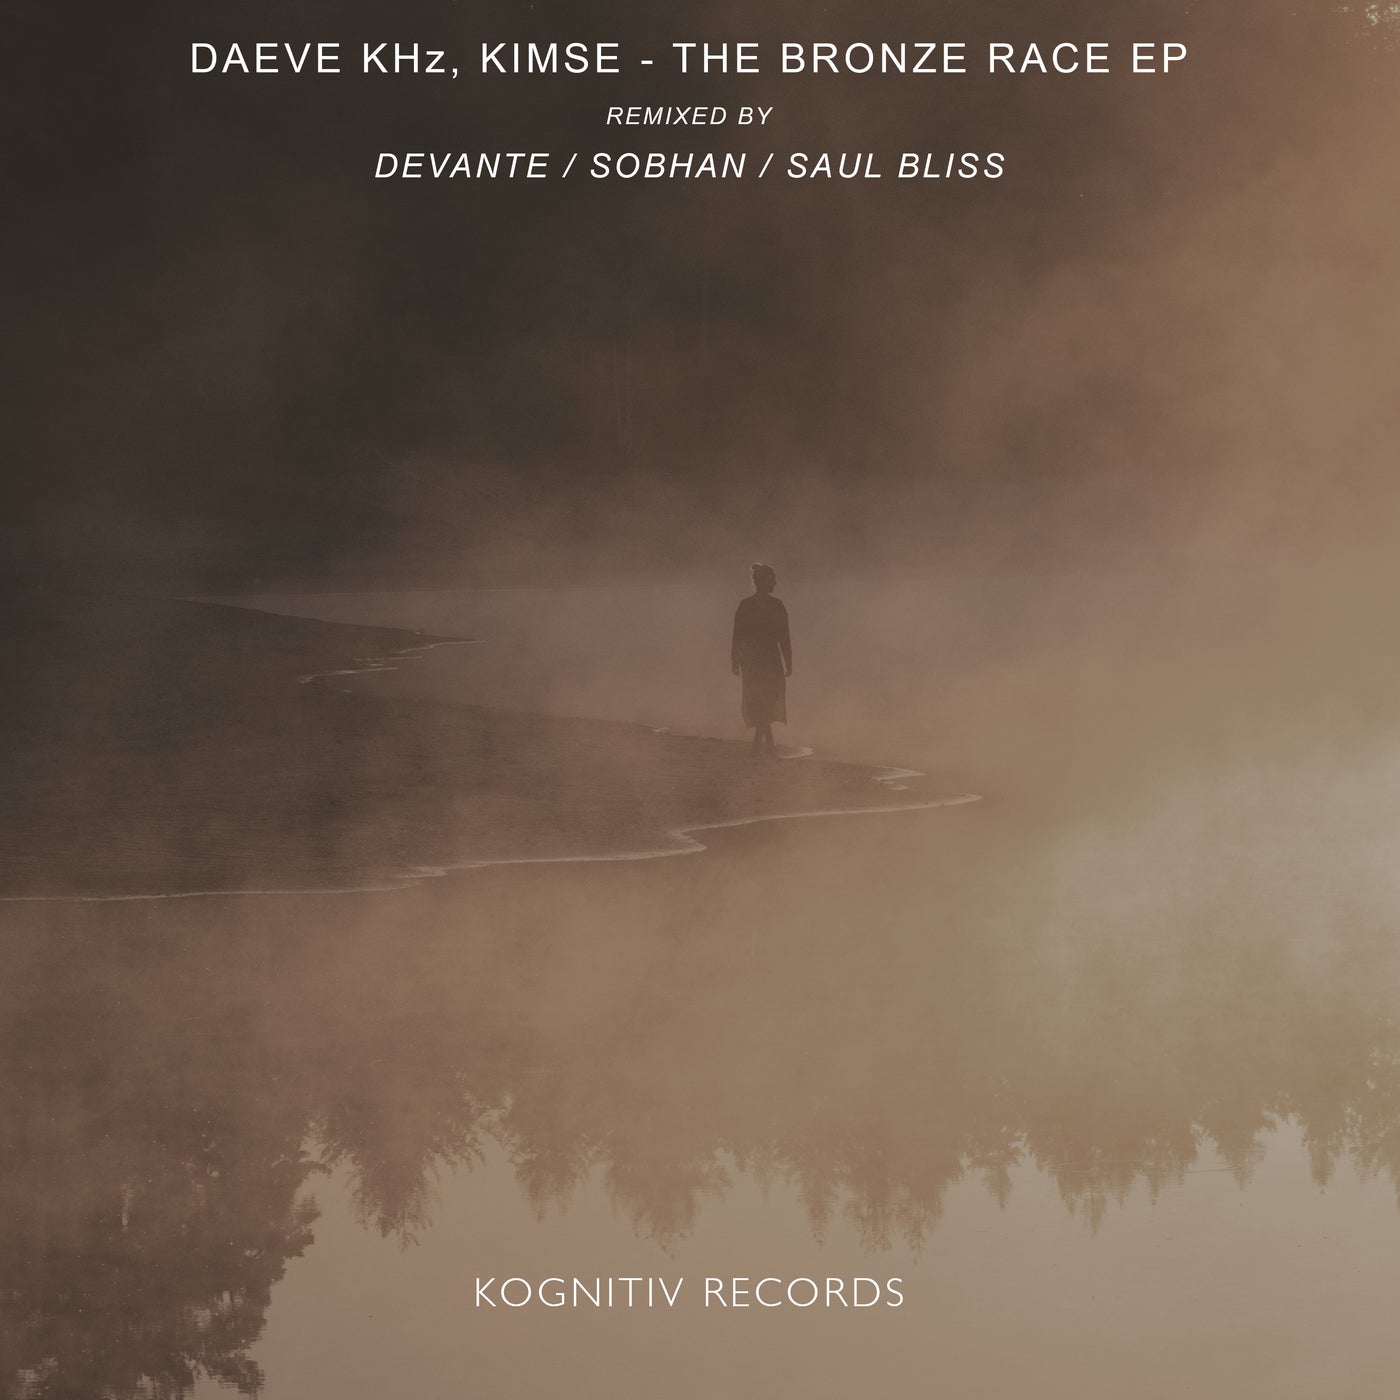 The Bronze Race EP